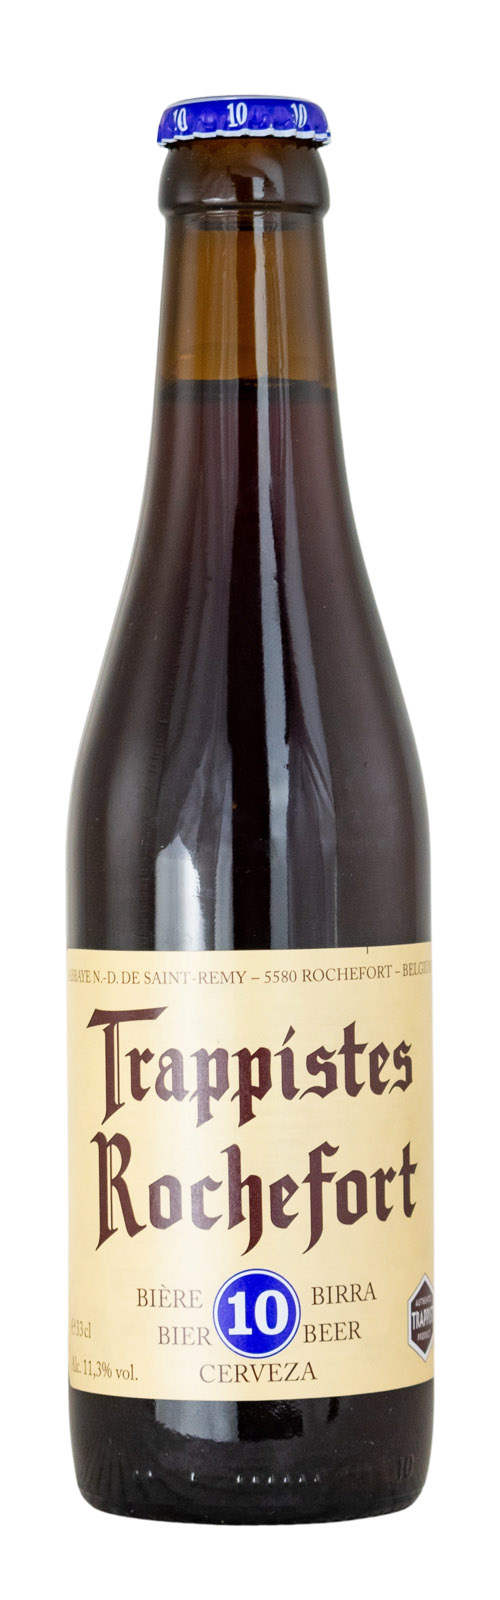 Trappistes Rochefort 10 Bier - 0,33L 11,3% vol